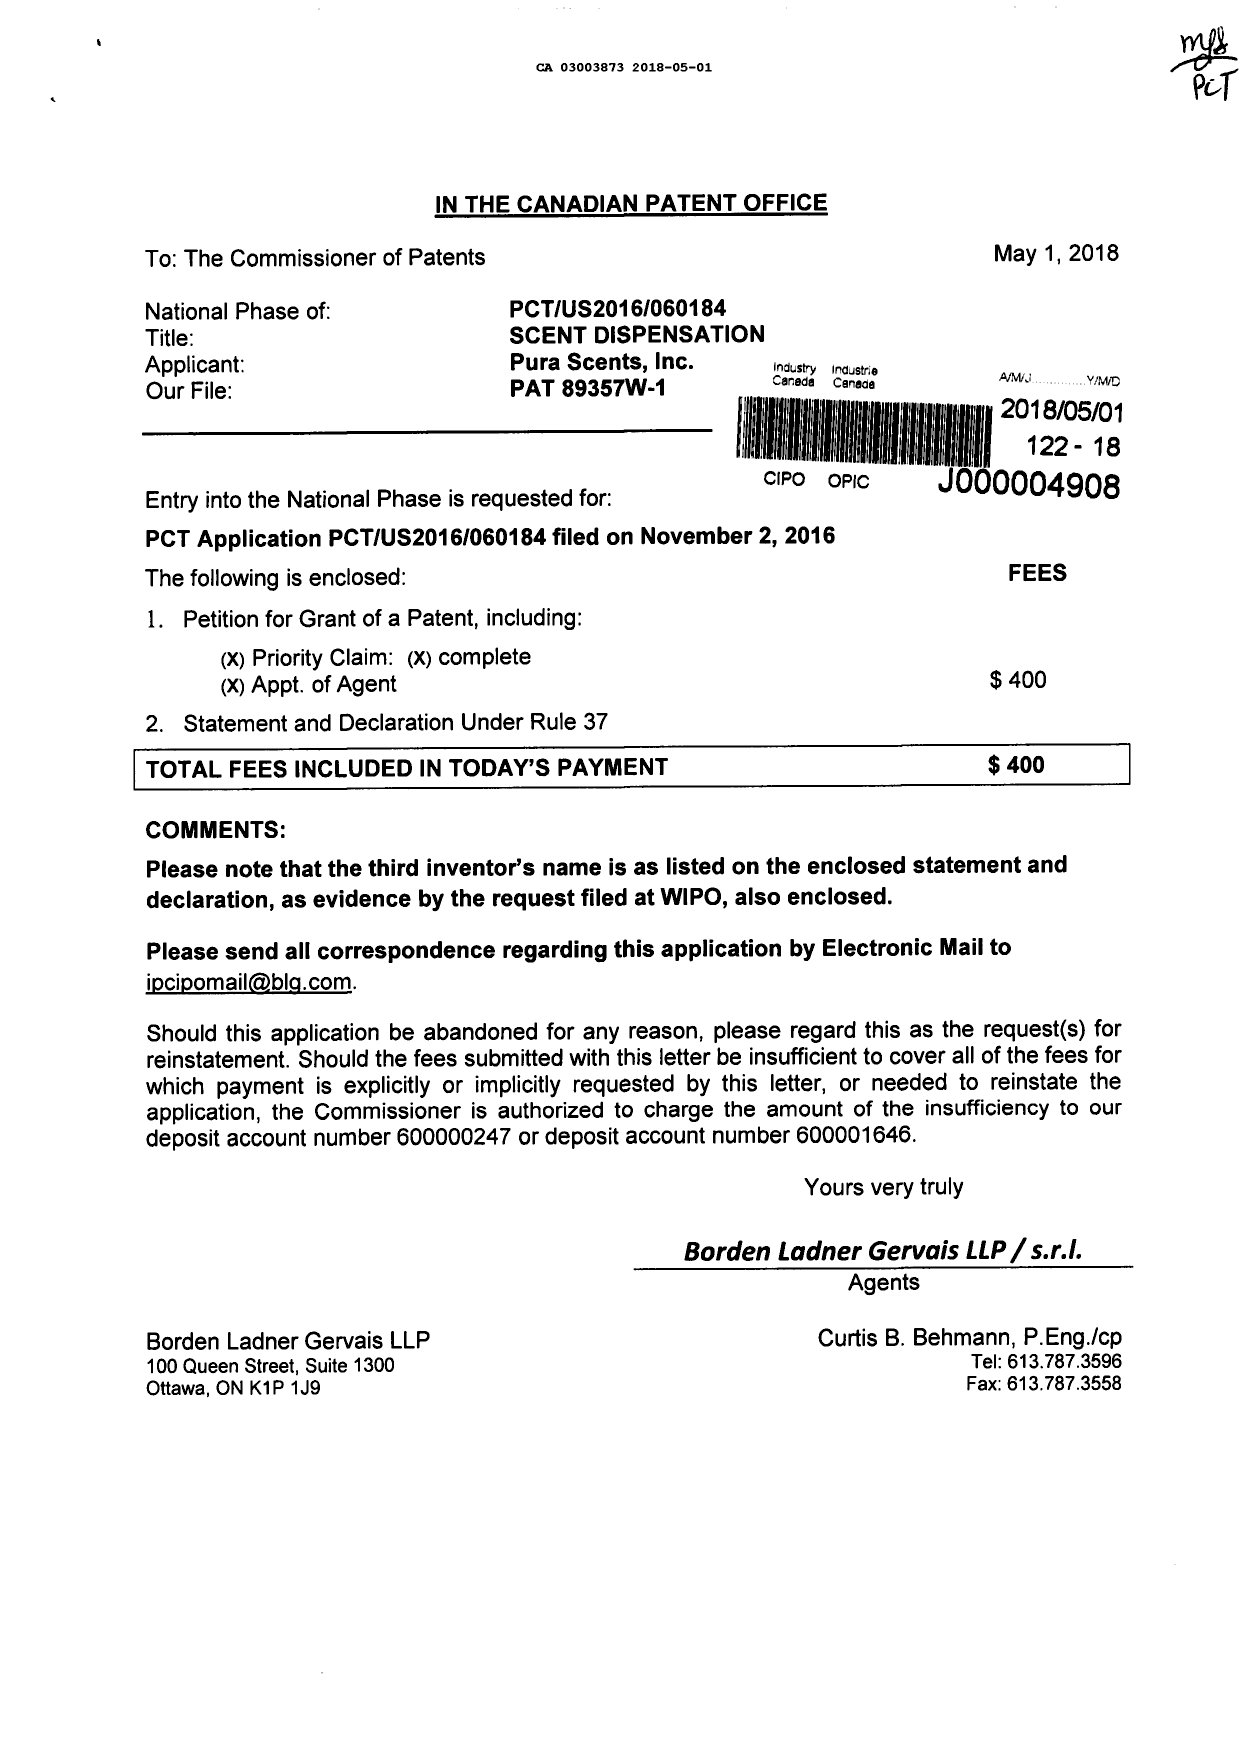 Document de brevet canadien 3003873. Demande d'entrée en phase nationale 20180501. Image 1 de 4